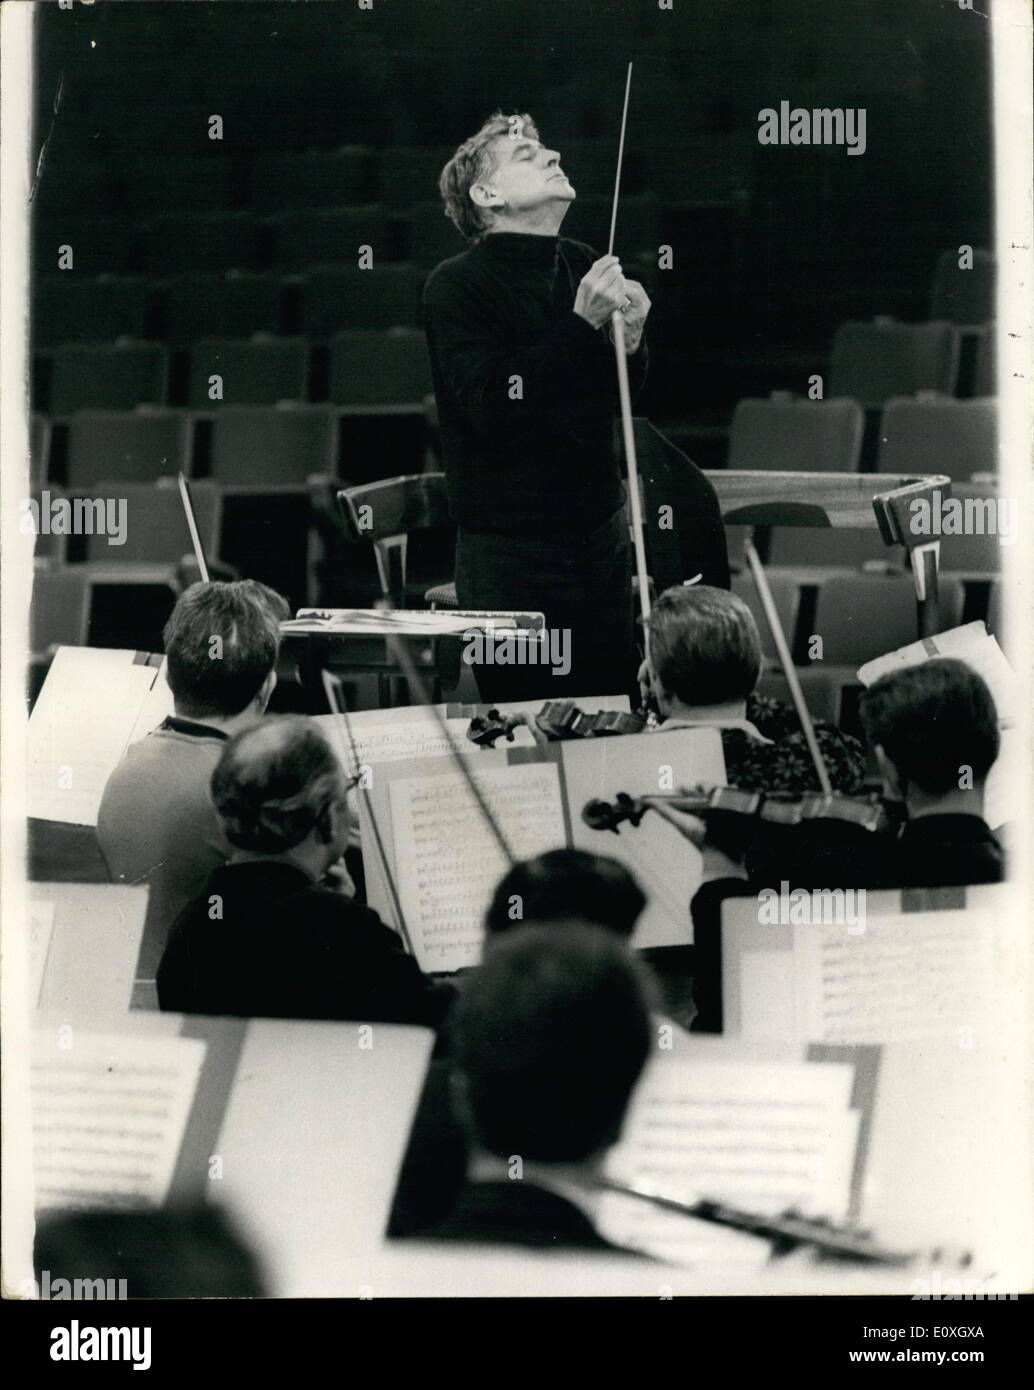 12. Dezember 1966 - probt für London Symphony Orchesterkonzert Leonard Bernstein. Foto zeigt, dass Leonard Bernstein, der berühmte Musikdirektor des New York Philharmonic Orchestra, im Bild heute dirigieren das London Symphony Orchestra, während der Proben für das Konzert heute Abend in der Royal Festival Hall, London. Stockfoto